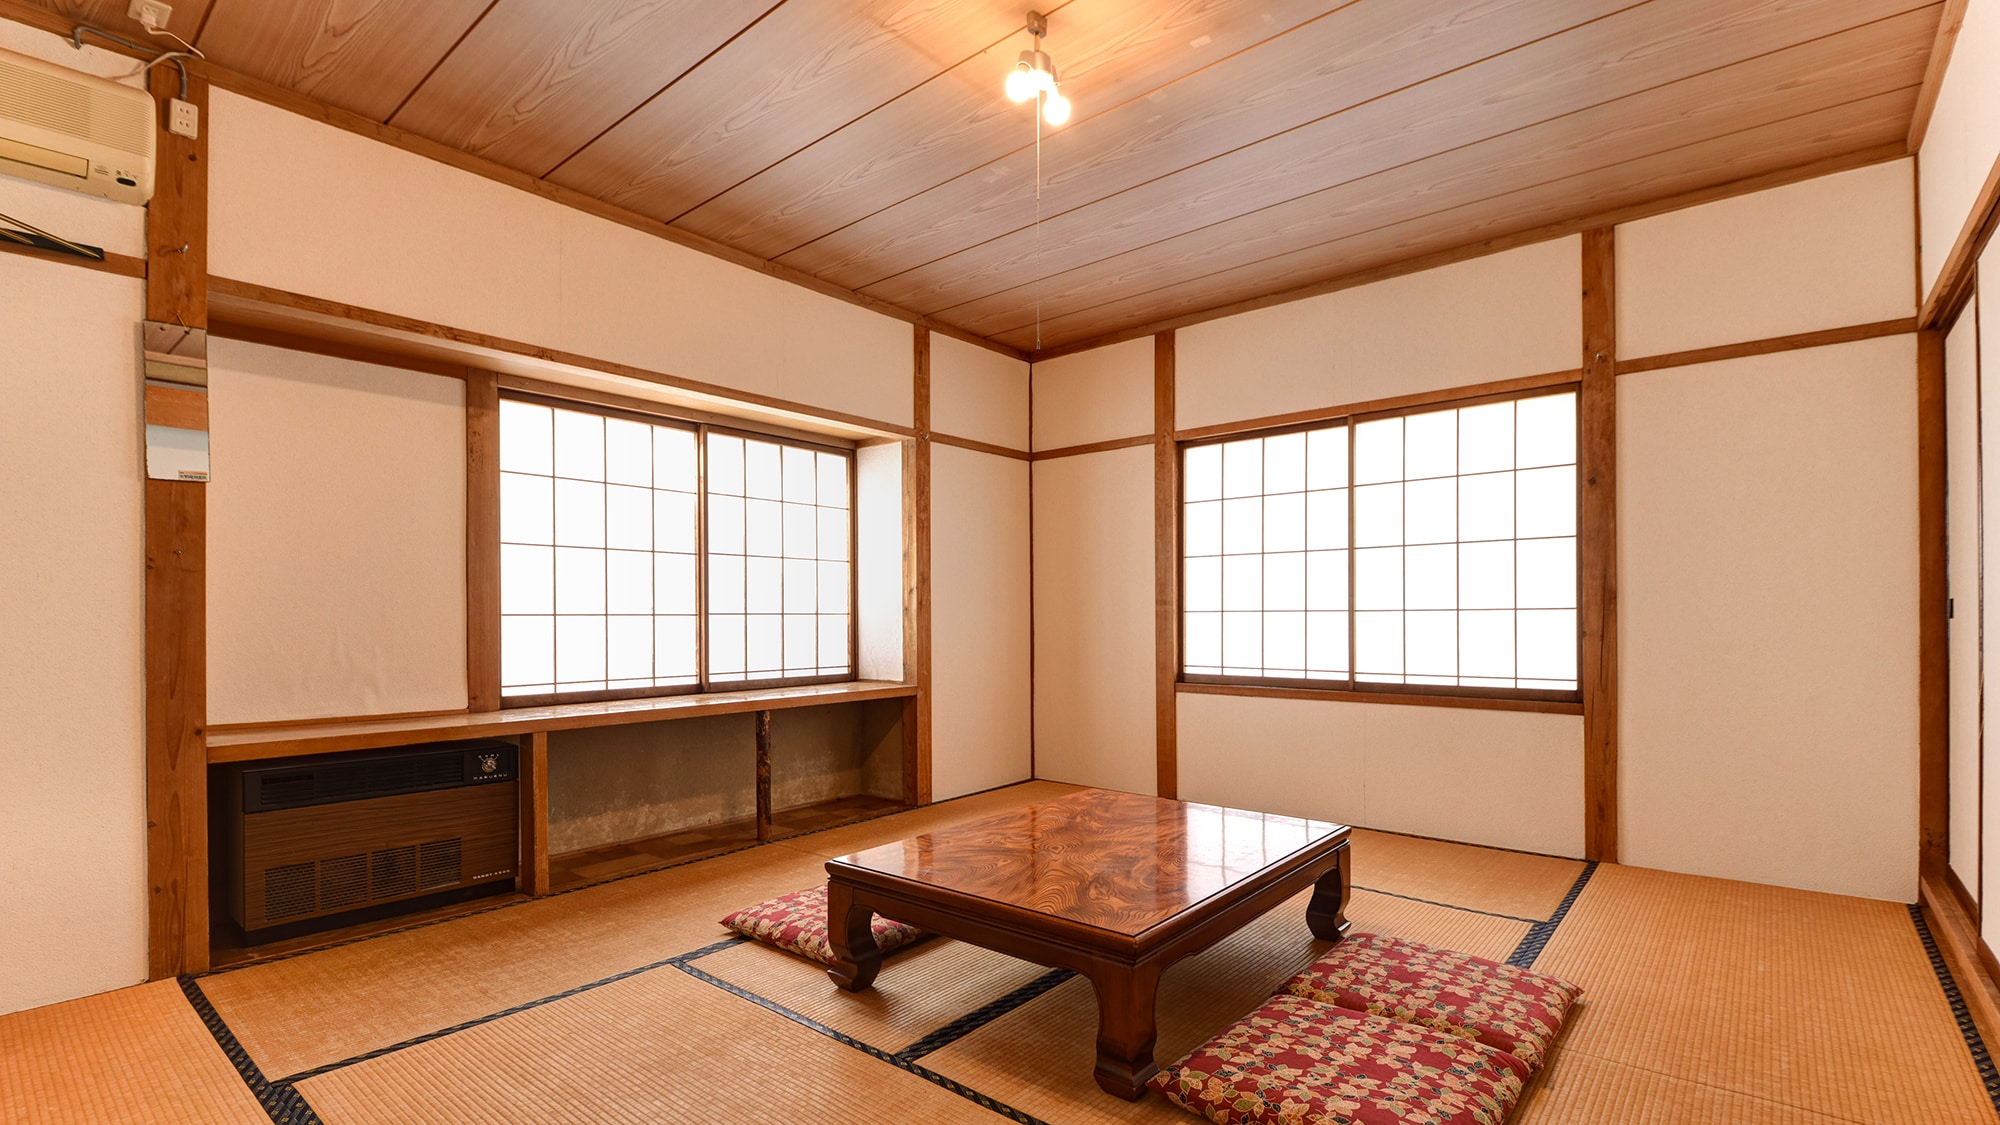 * ห้องสไตล์ญี่ปุ่นในอาคารเสริม / ไม่มีห้องอาบน้ำ ห้องส้วม หรือสิ่งอำนวยความสะดวก จึงสามารถเข้าพักได้อย่างประหยัด แนะนำสำหรับนักเรียนและค่ายฝึก ◎